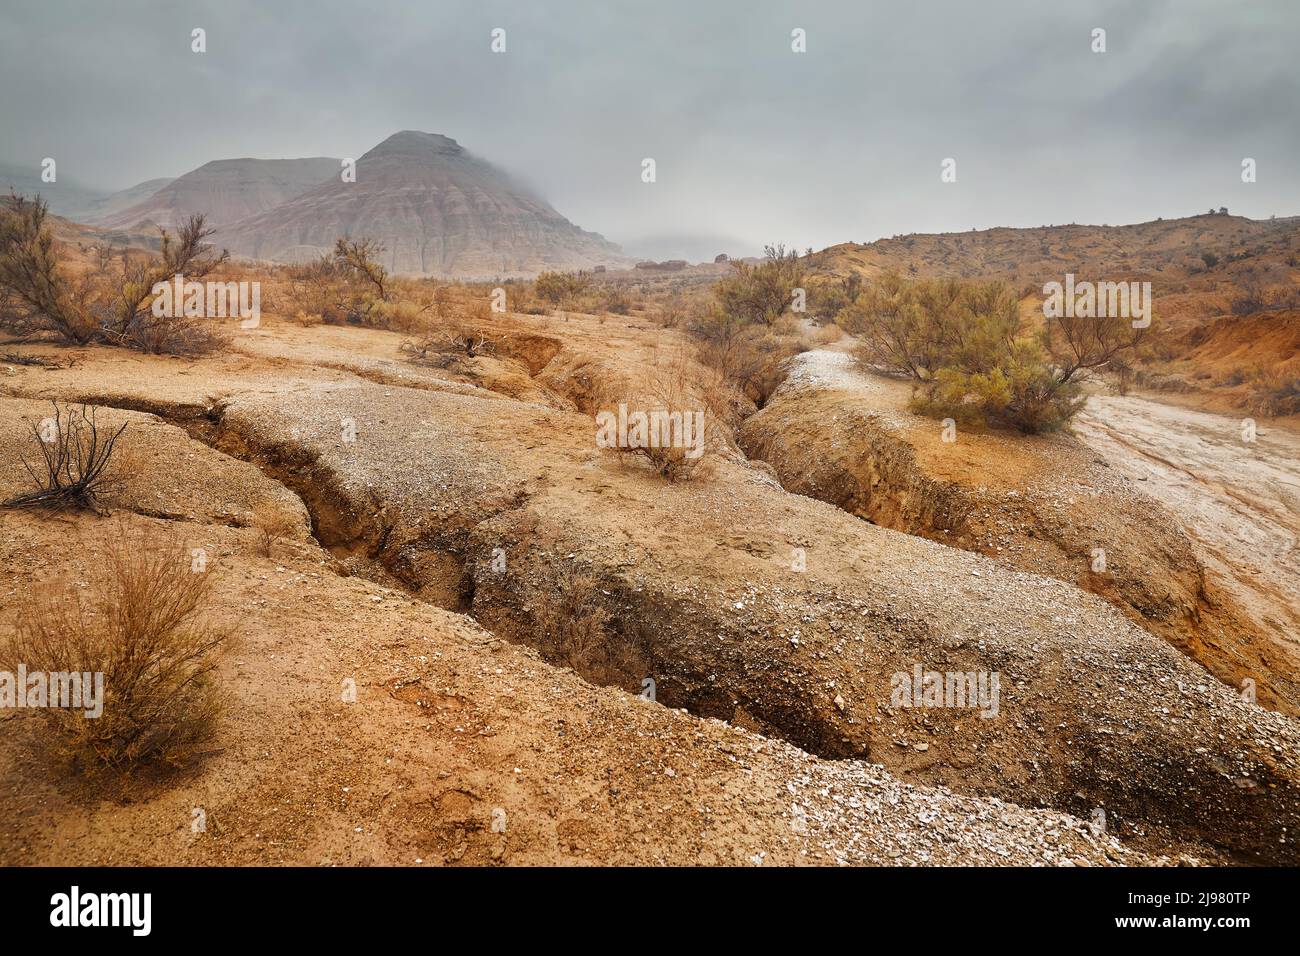 Landschaft von Red Mount mit Streifen bizarre geschichtete Berge in Canyon bei Nebel bedeckt bewölkten Himmel in schönen Wüstenpark mit trockener Pflanze an der Vorgruppe Stockfoto